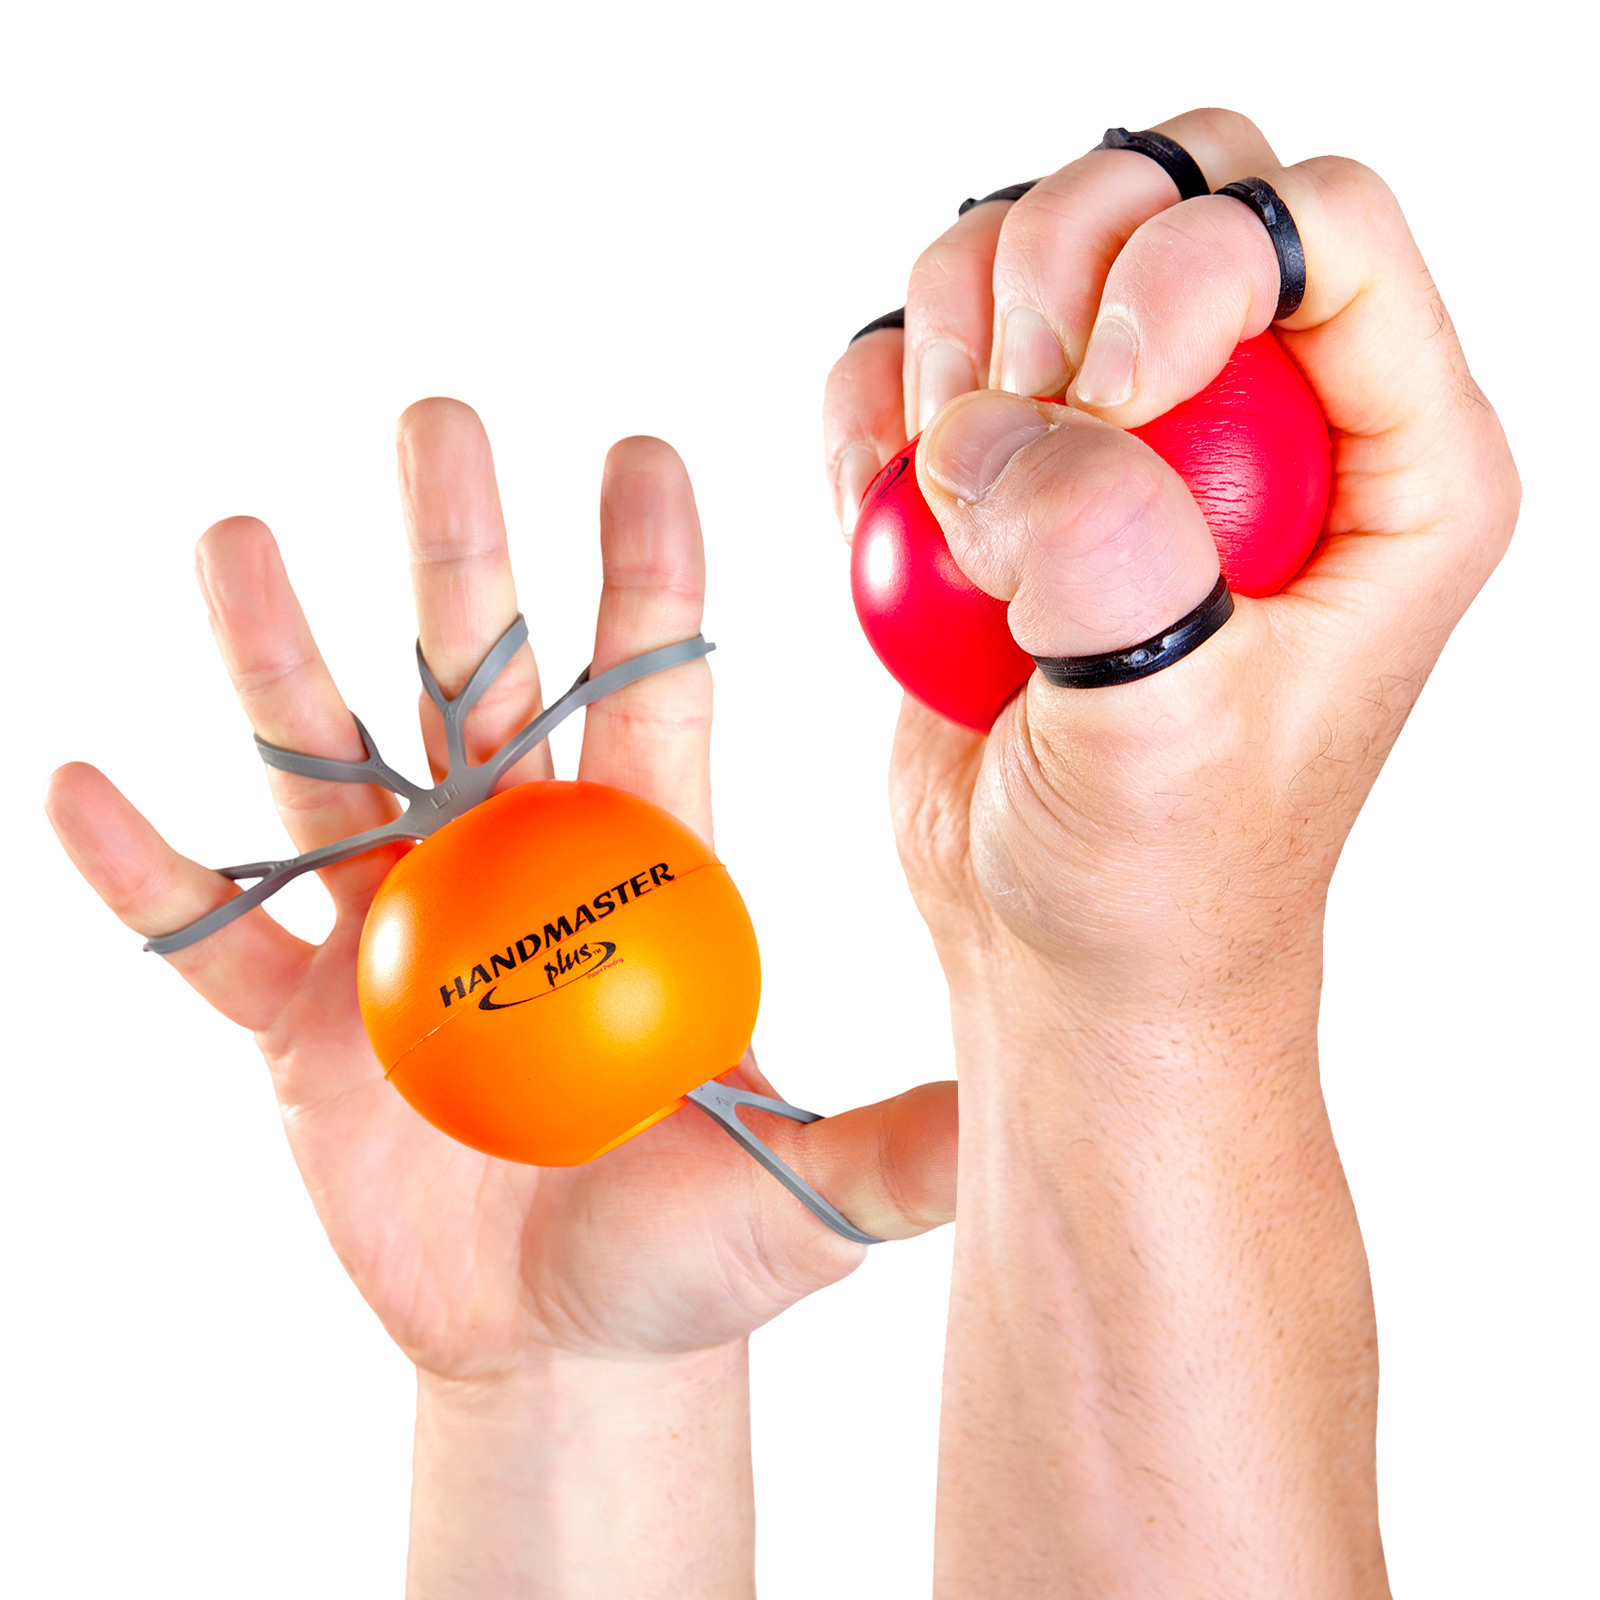 Handmaster Plus, la balle qui renforce les muscles de la main et du poignet